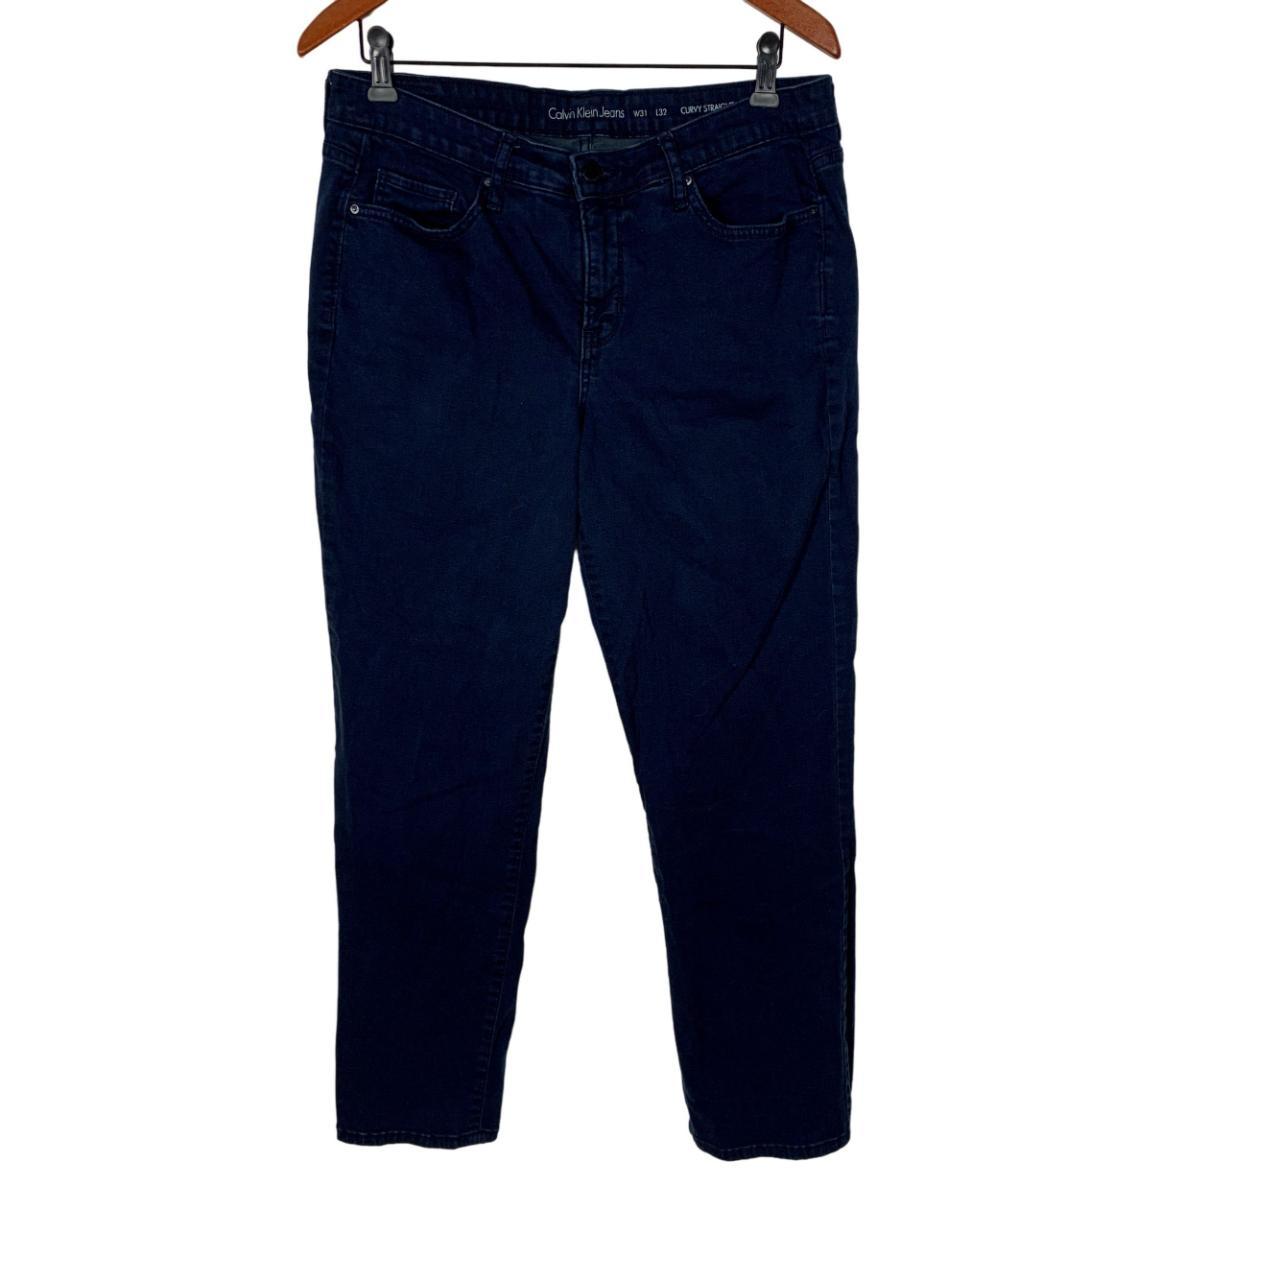 Calvin Klein Curvy Straight Jeans Size 31x32 #CK... - Depop